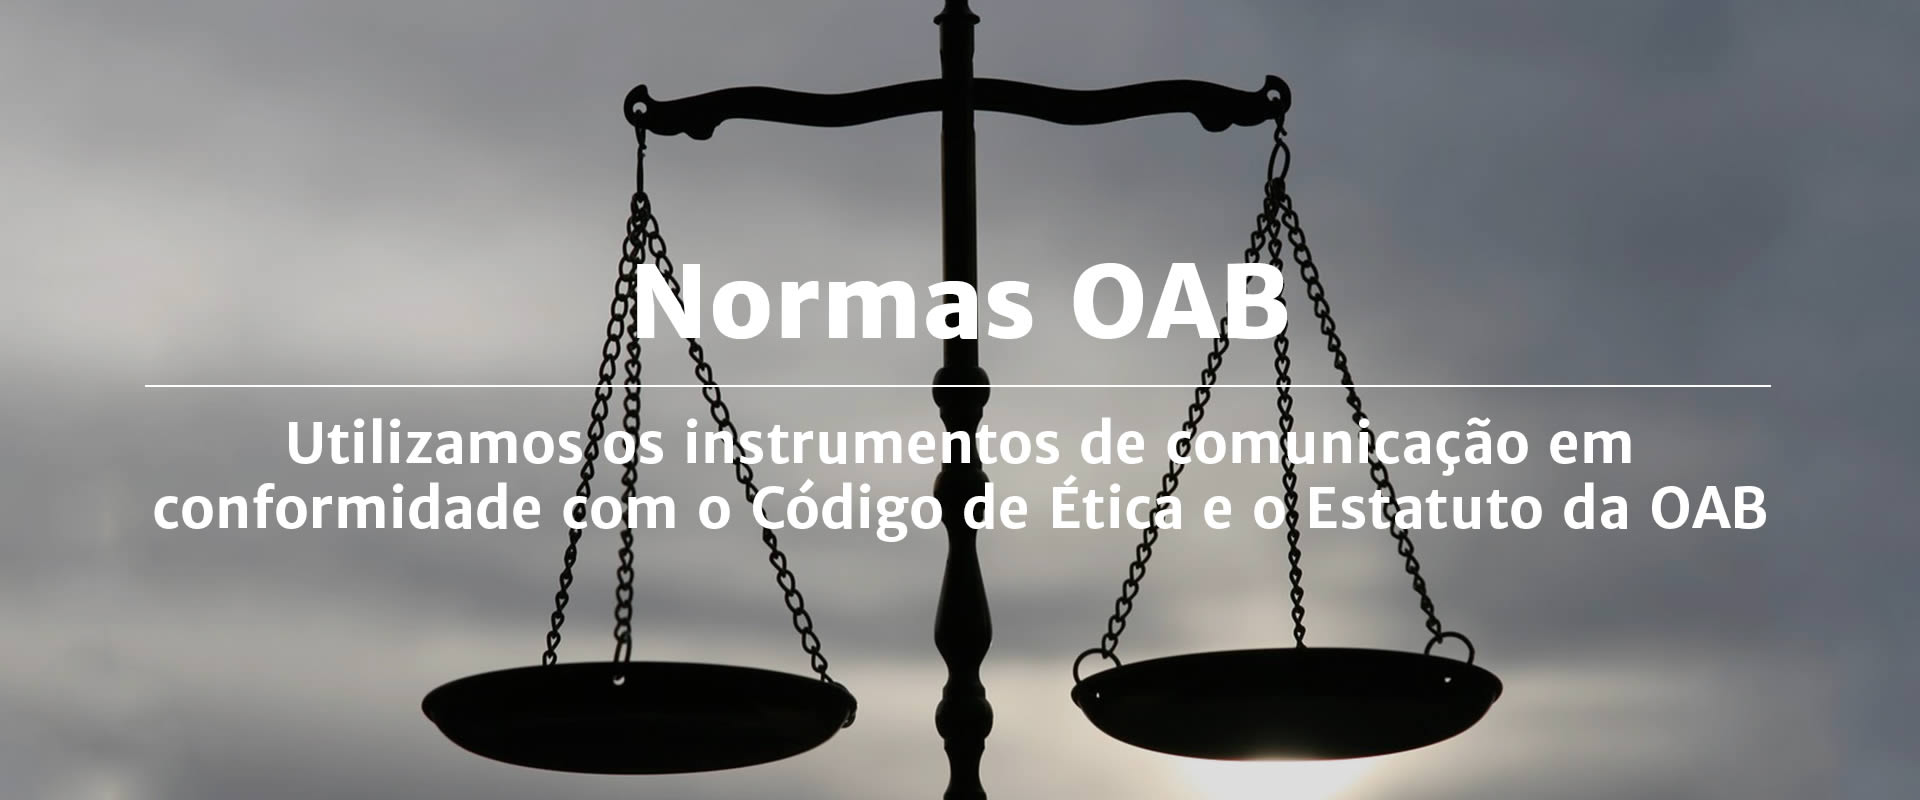 Marketing Jurídico | Utilizamos os instrumentos de comunicação em conformidade com o Código de Ética e o Estatuto da OAB